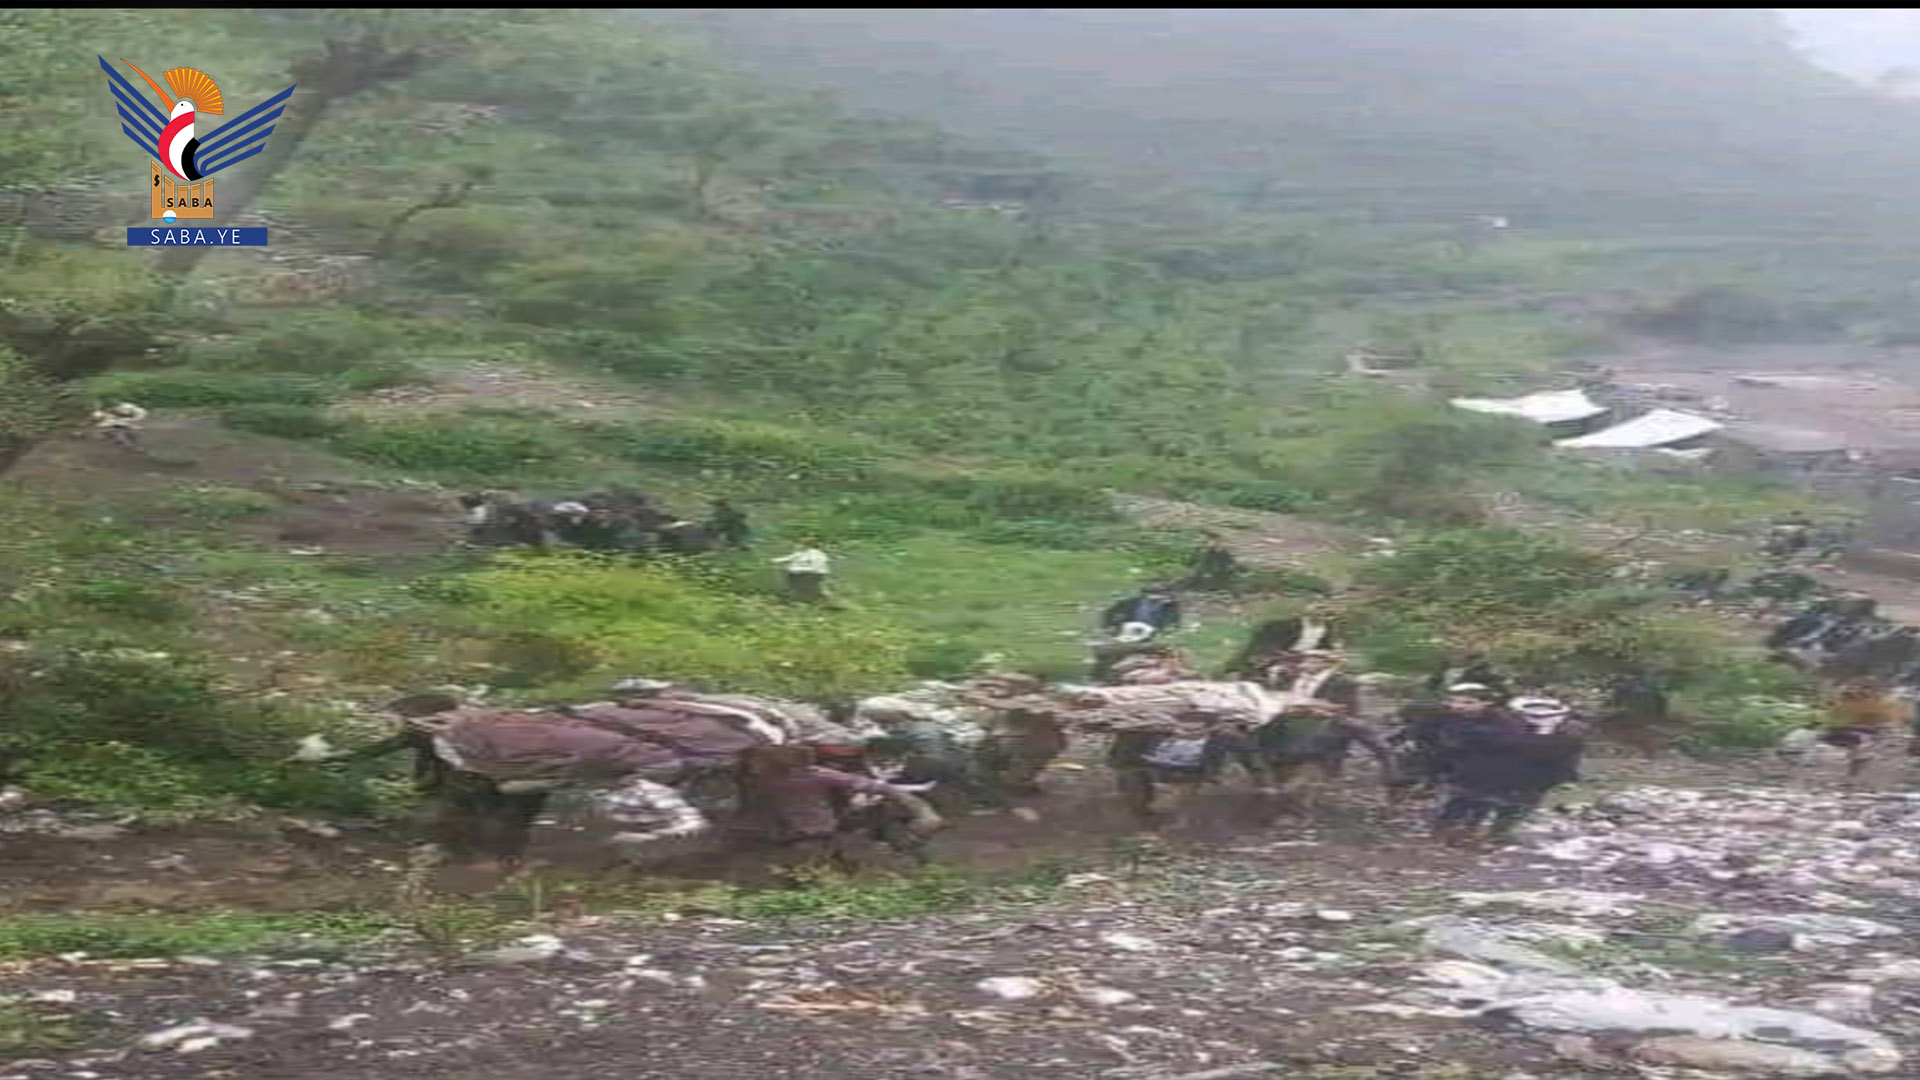   Huit morts après de fortes pluies torrentielles à Hajjah